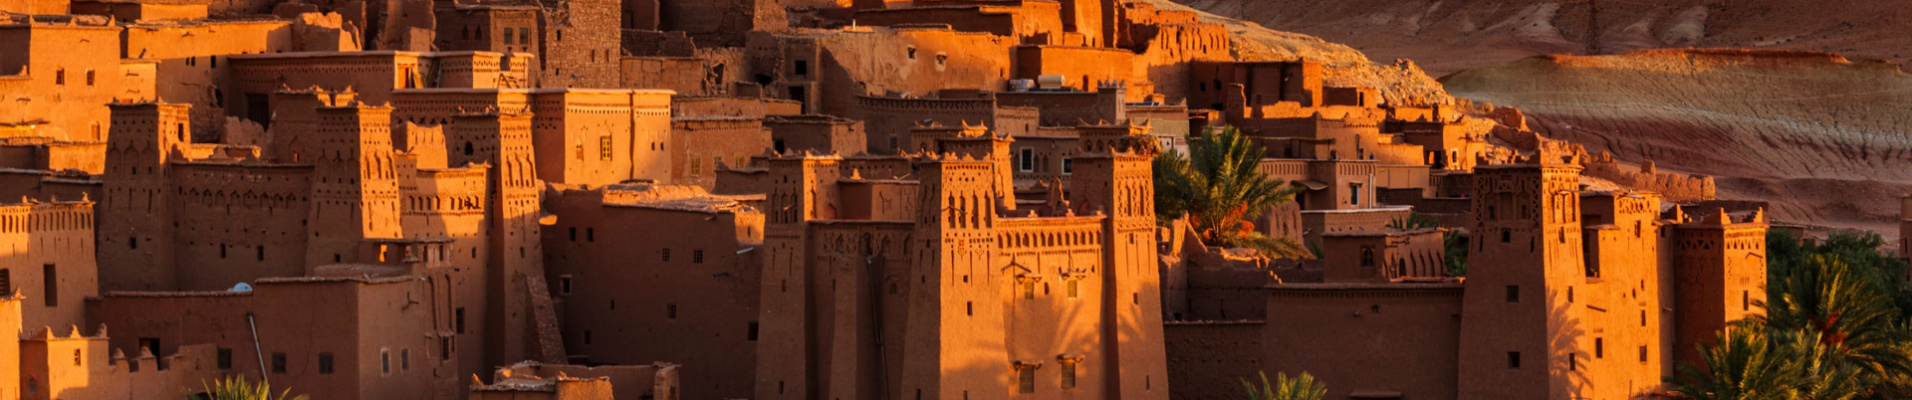 kasbah-morocco